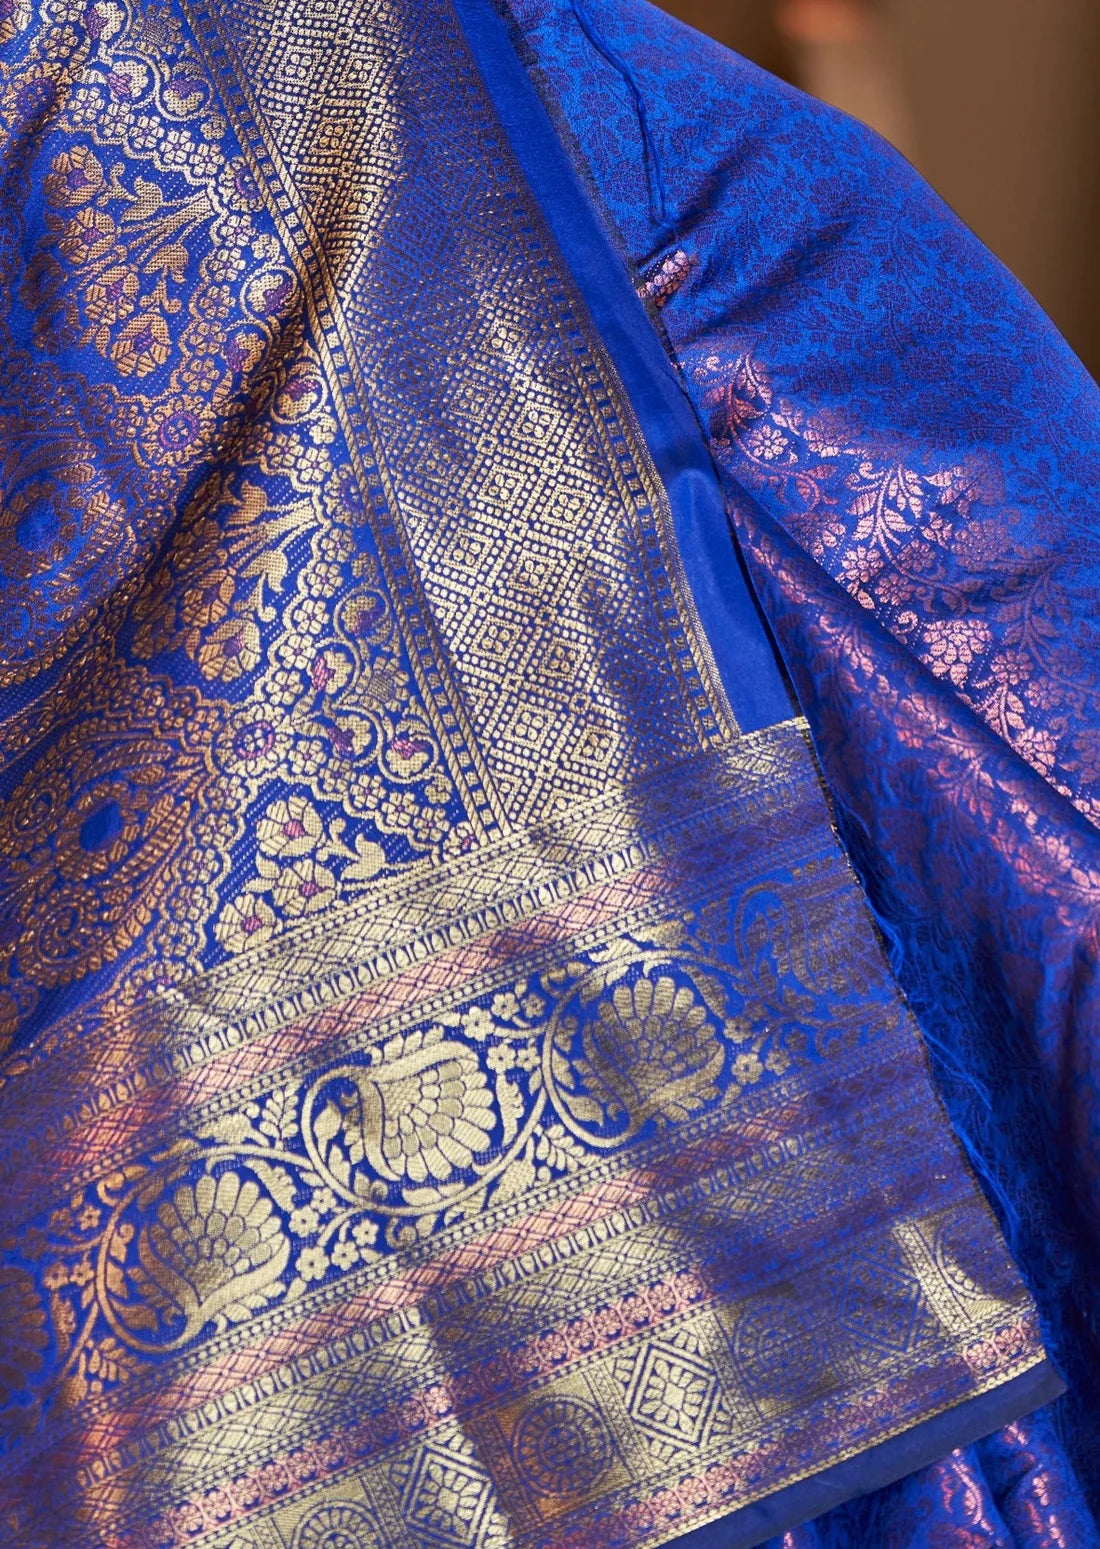 Shop cobalt blue kanchipuram pattu silk saree online for wedding.